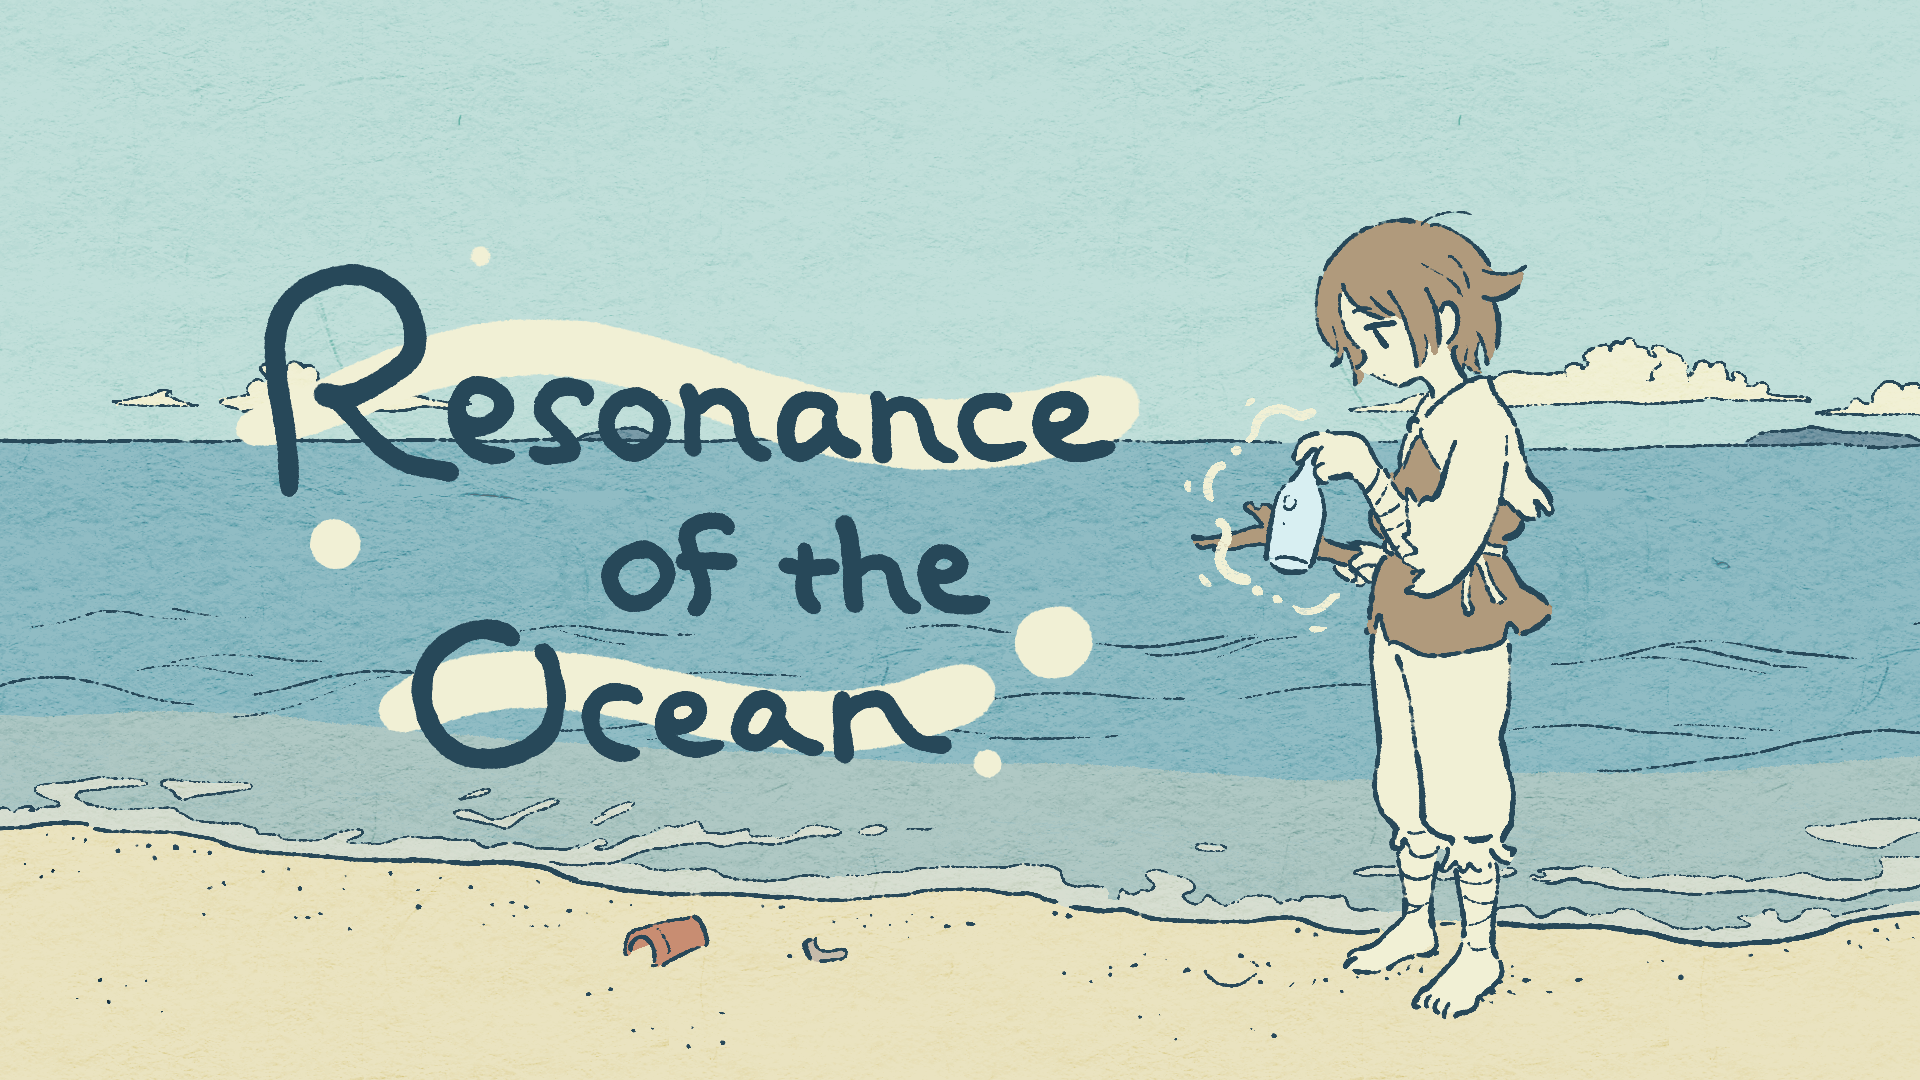 Banner of Resonance of the Ocean 